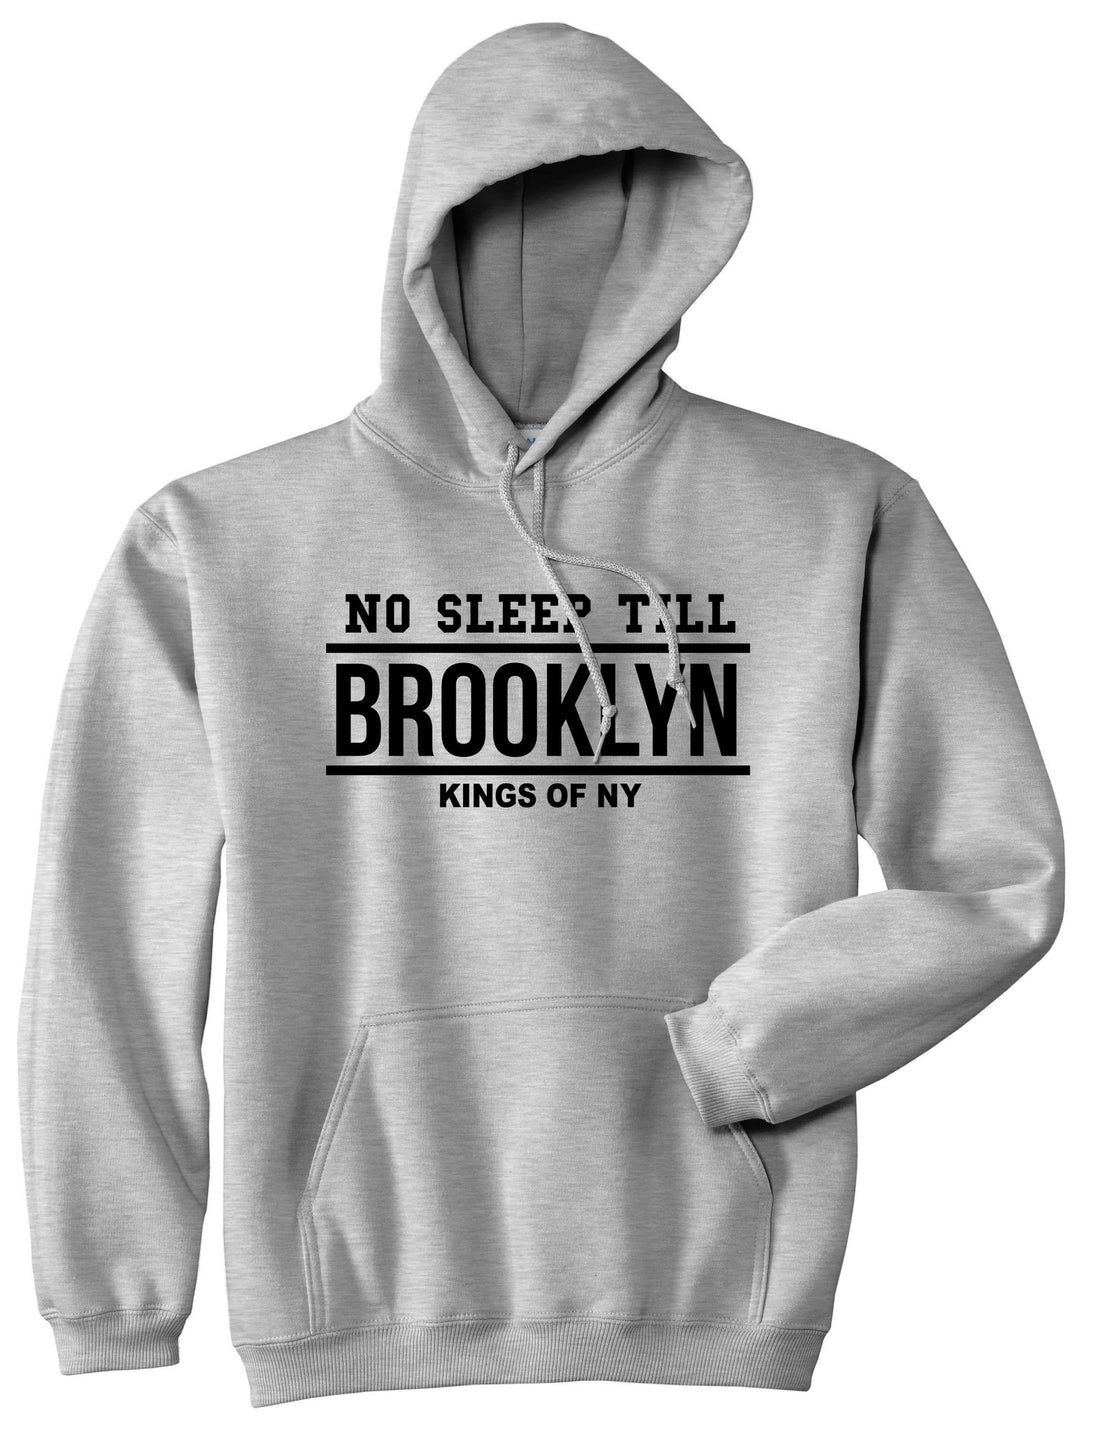 No Sleep Till Brooklyn Pullover Hoodie Hoody in Grey by Kings Of NY